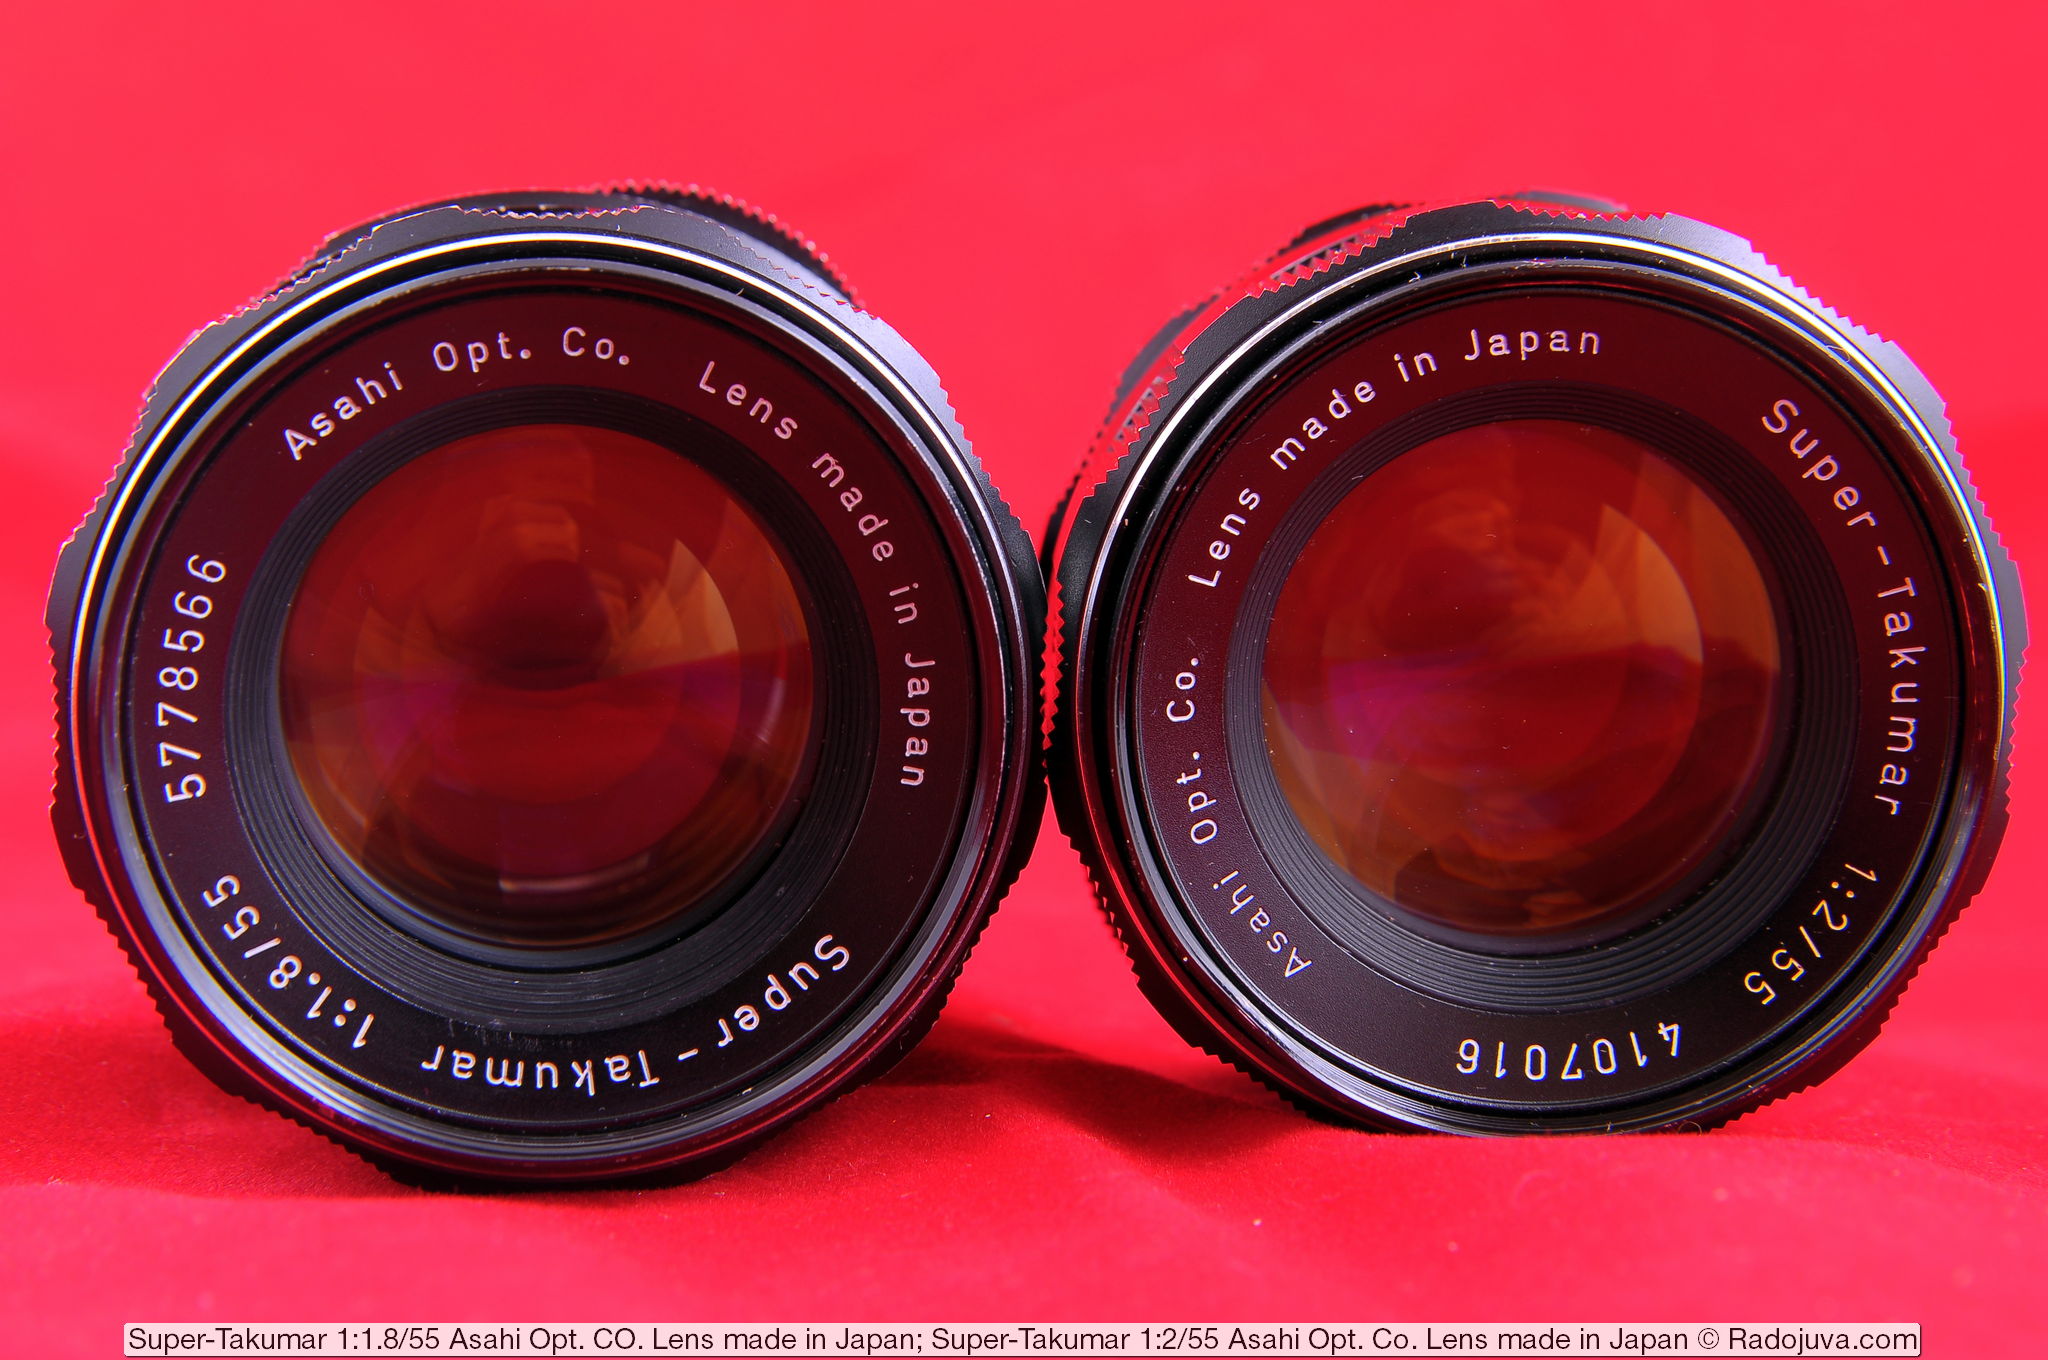 Super-Takumar 1: 1.8 / 55 Asahi Opt Lenses. Co. Lens made in Japan and Super-Takumar 1: 2/55 Asahi Opt. Co. Lens made in japan